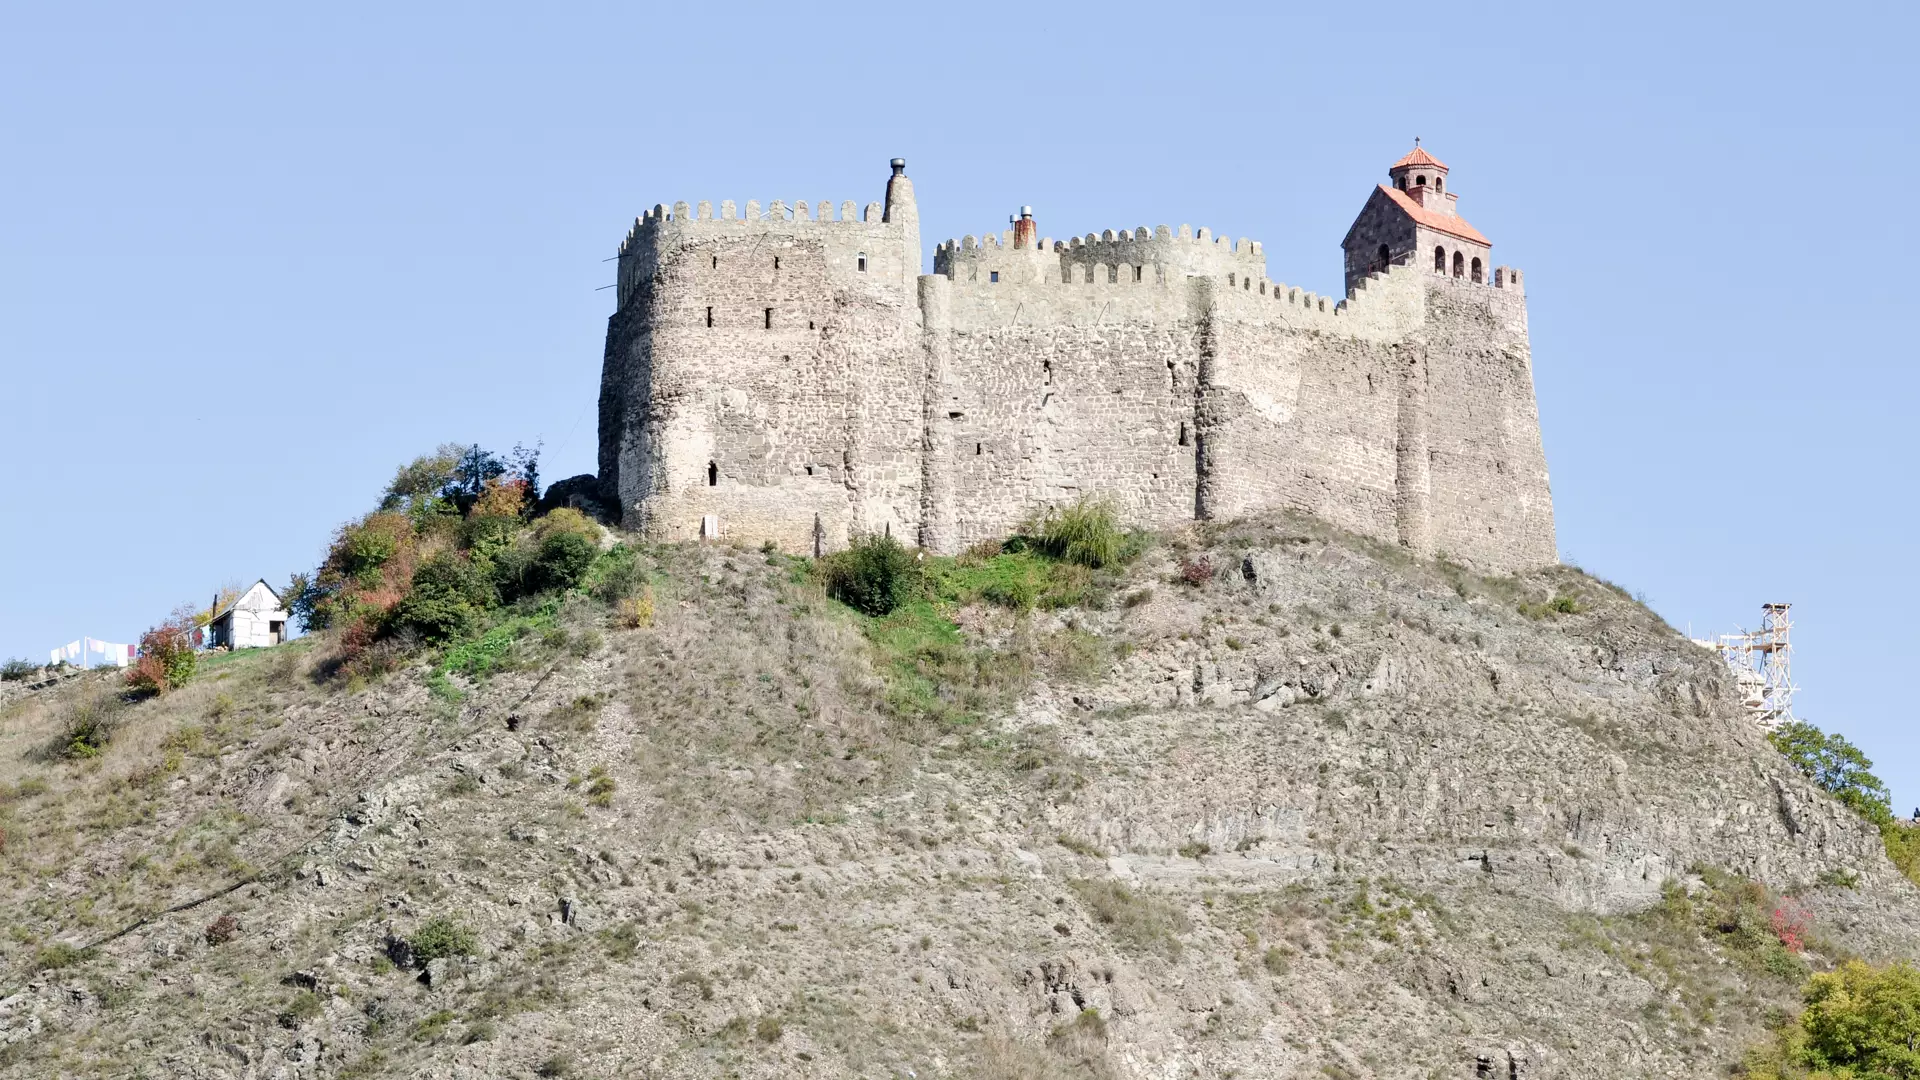 Mdzovreti Fortress